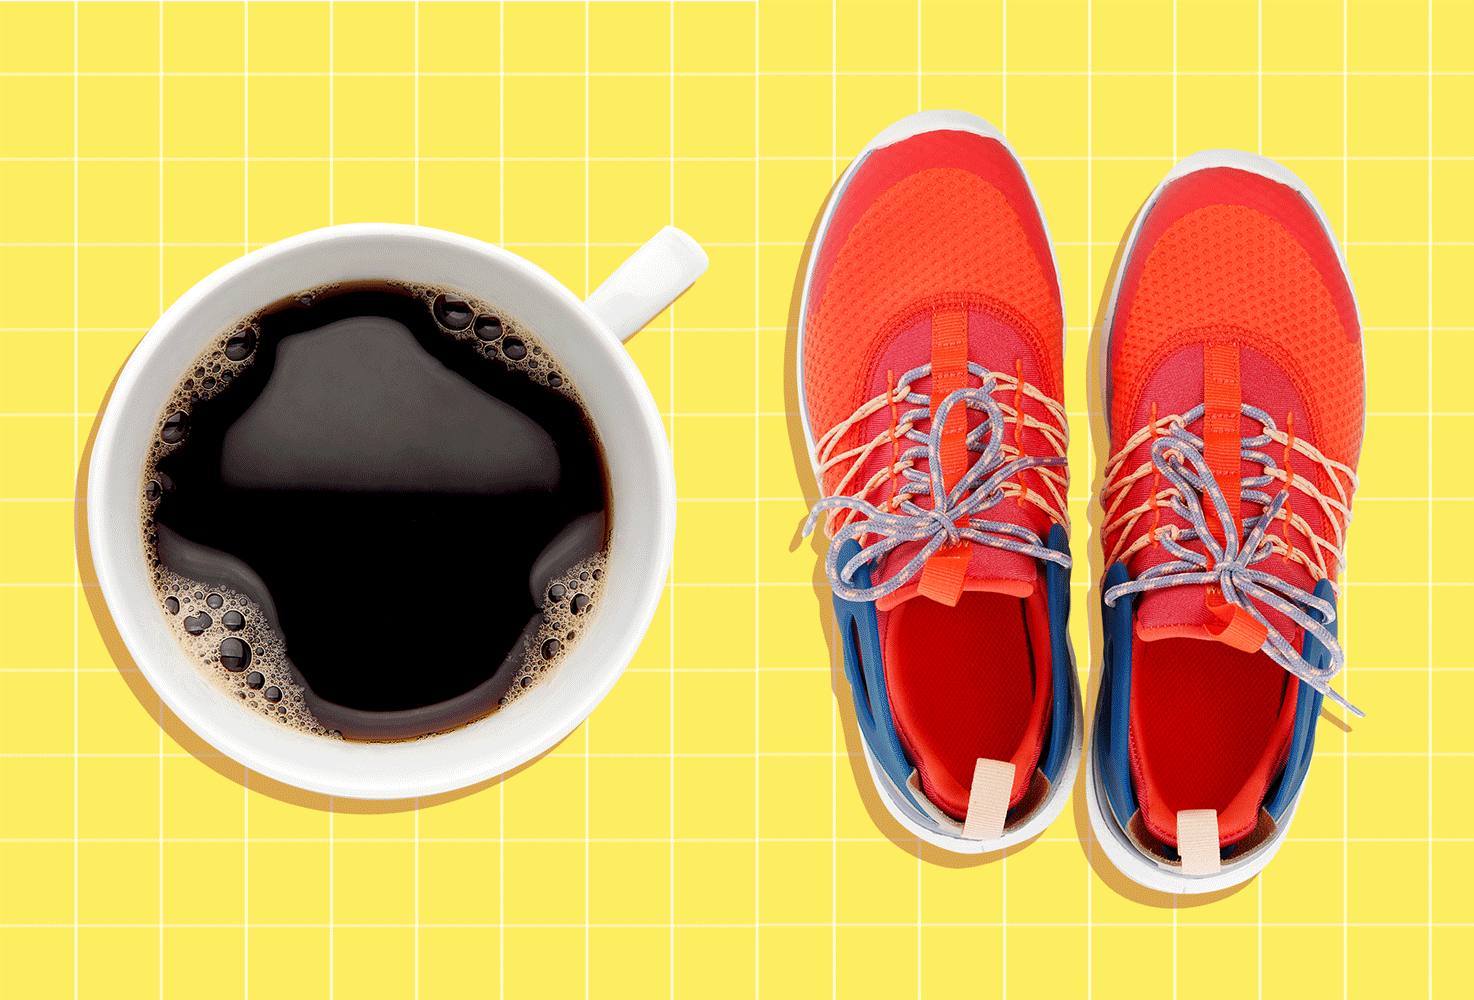 Cà phê hay thể dục: Lựa chọn nào giúp đánh bại cơn buồn ngủ tốt hơn? - Ảnh 5.